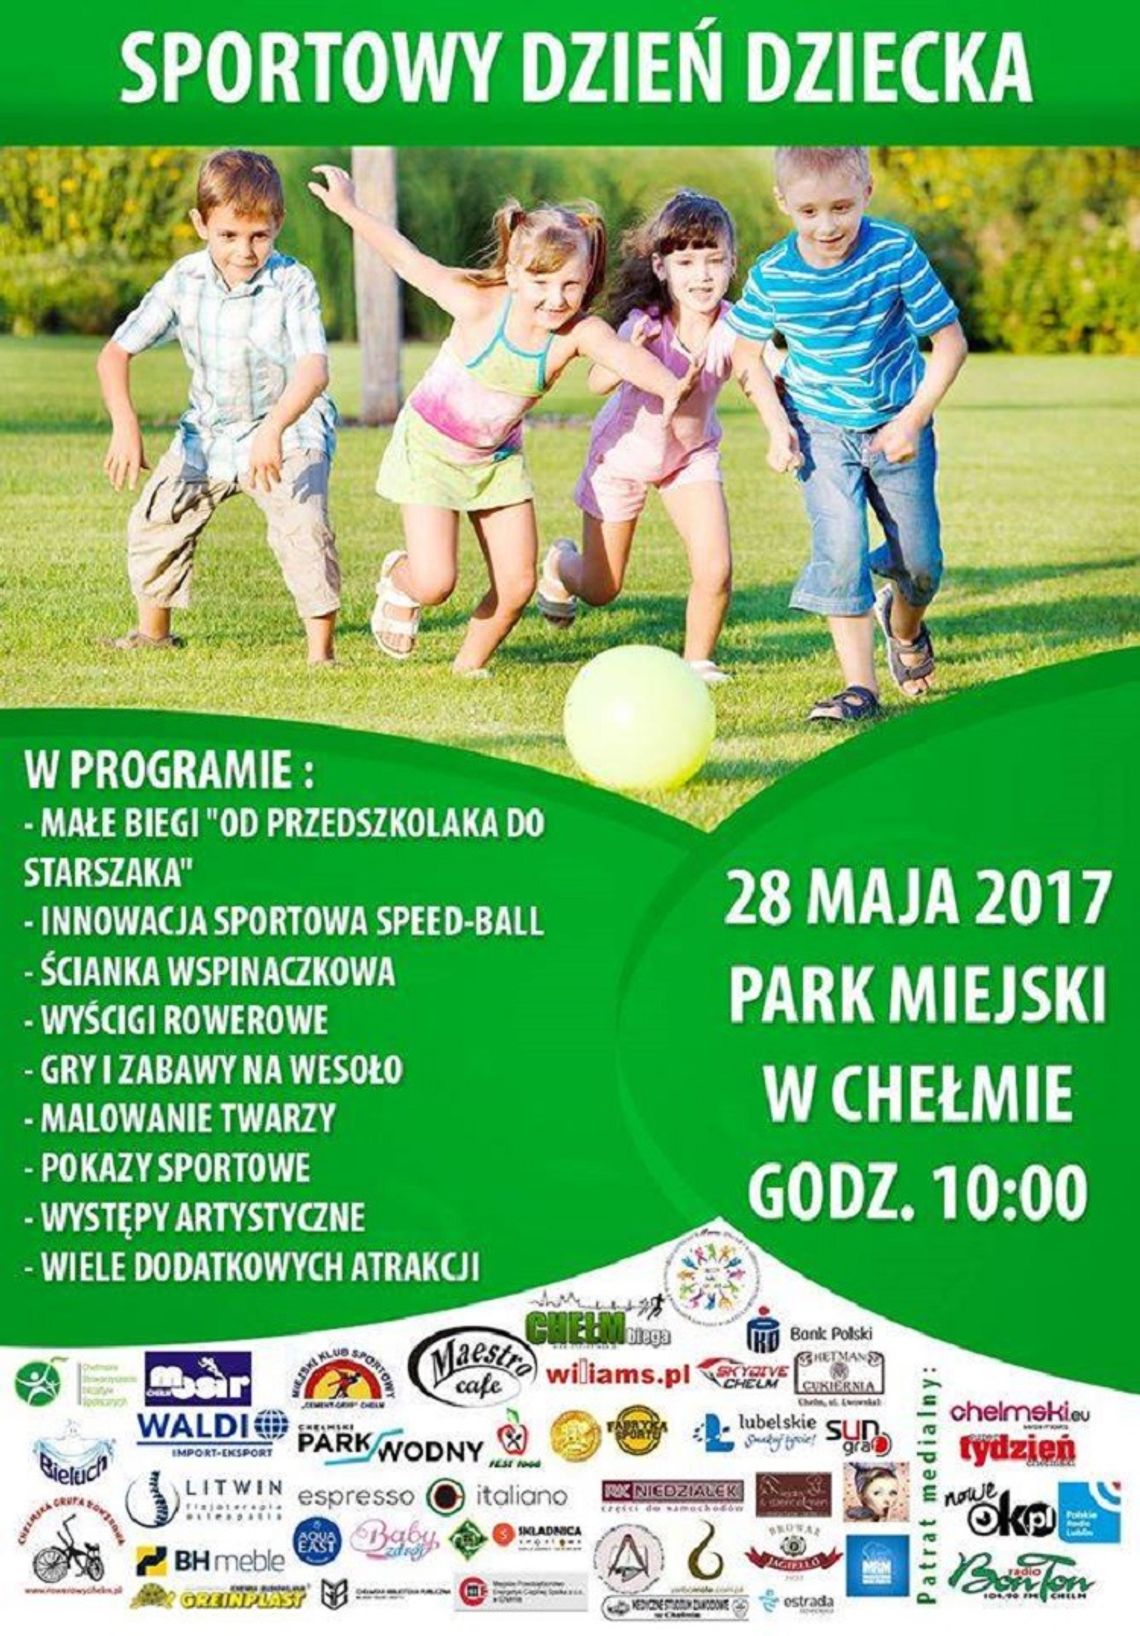 Sportowy Dzień Dziecka 28 maja w Parku Miejskim!